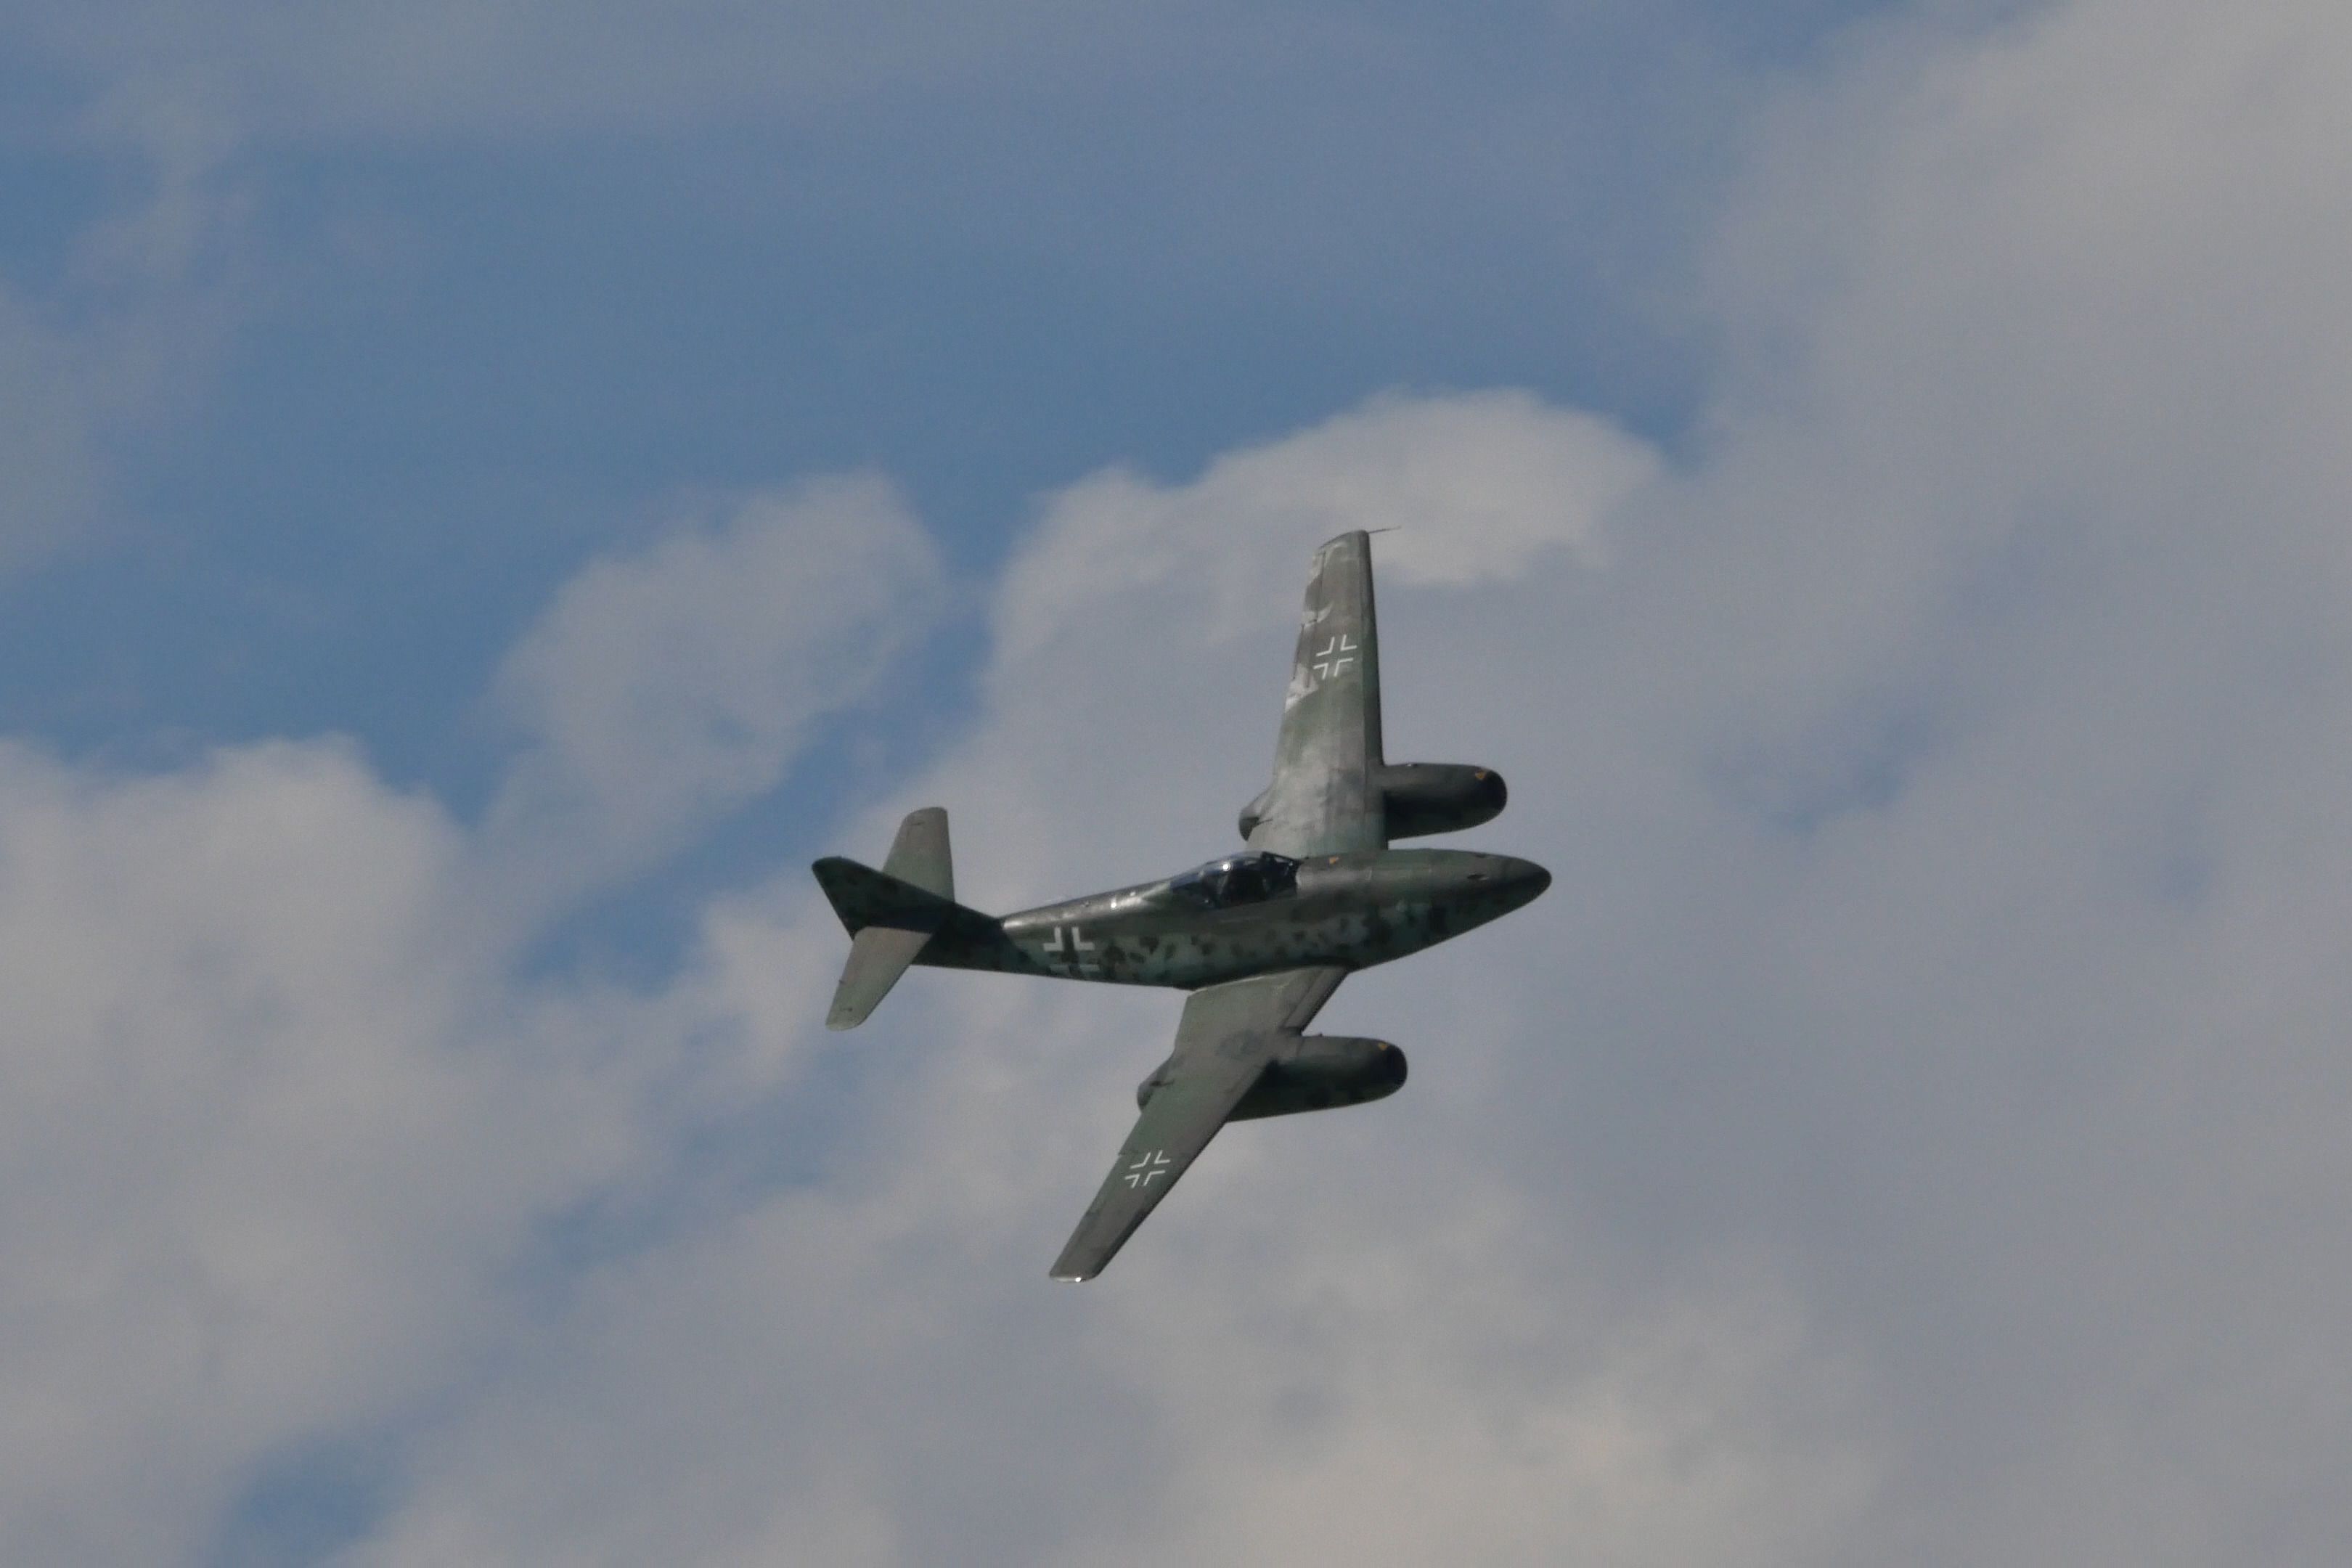 A Messerschmitt Me 262 Flying in the sky.